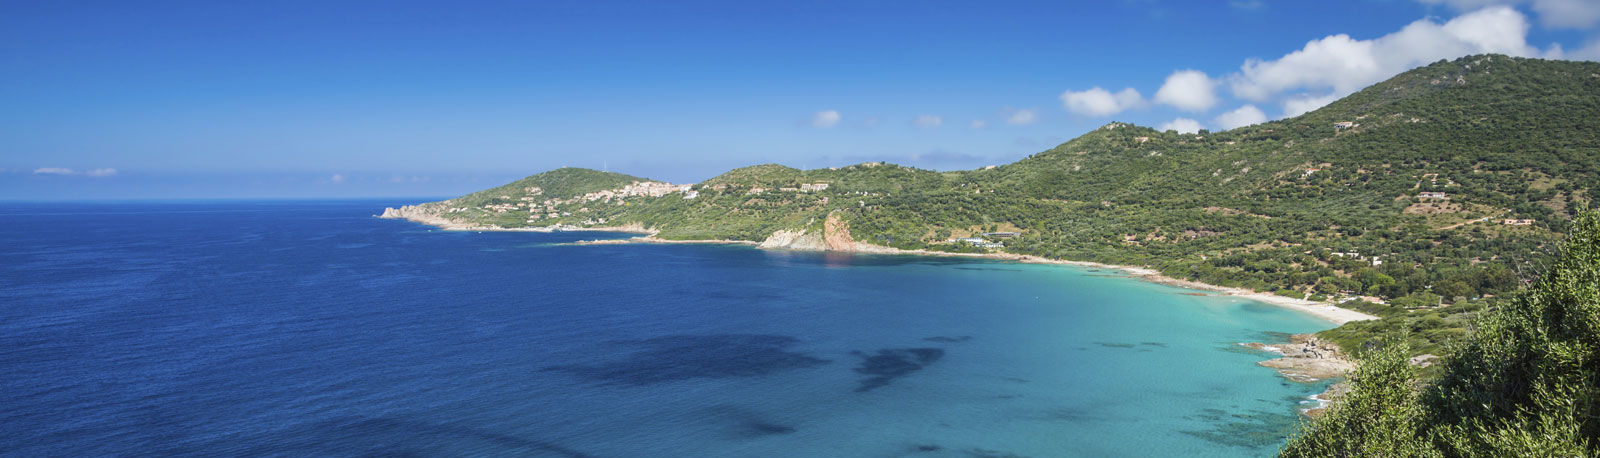 Bild für Cargese auf Korsika © joningall 2016 Thinkstock